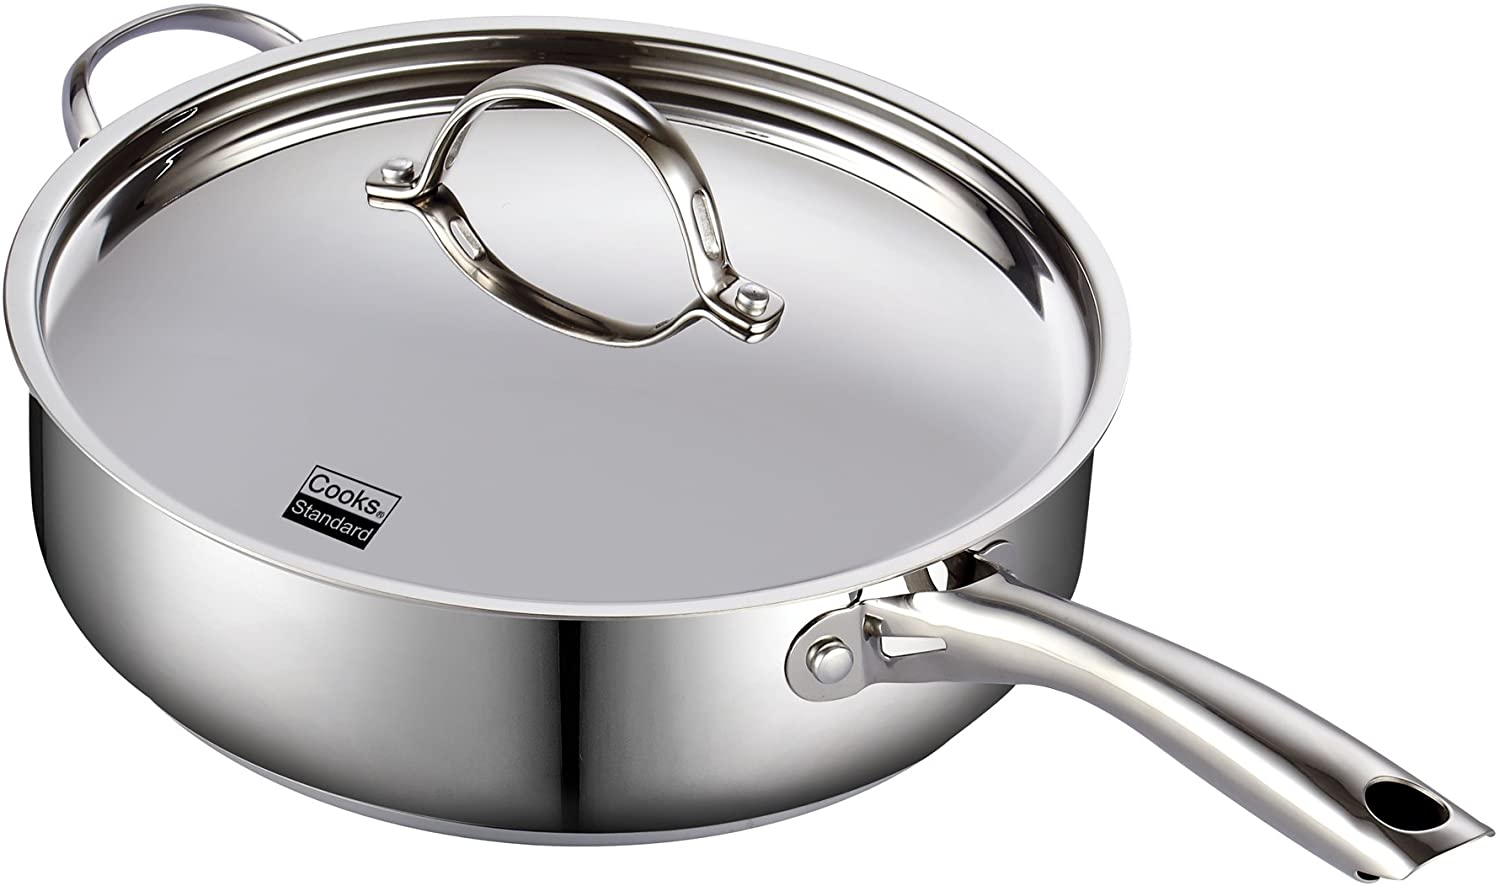 Cooks Standard 5 Quarts Non-Stick Aluminum Saute Pan with Lid